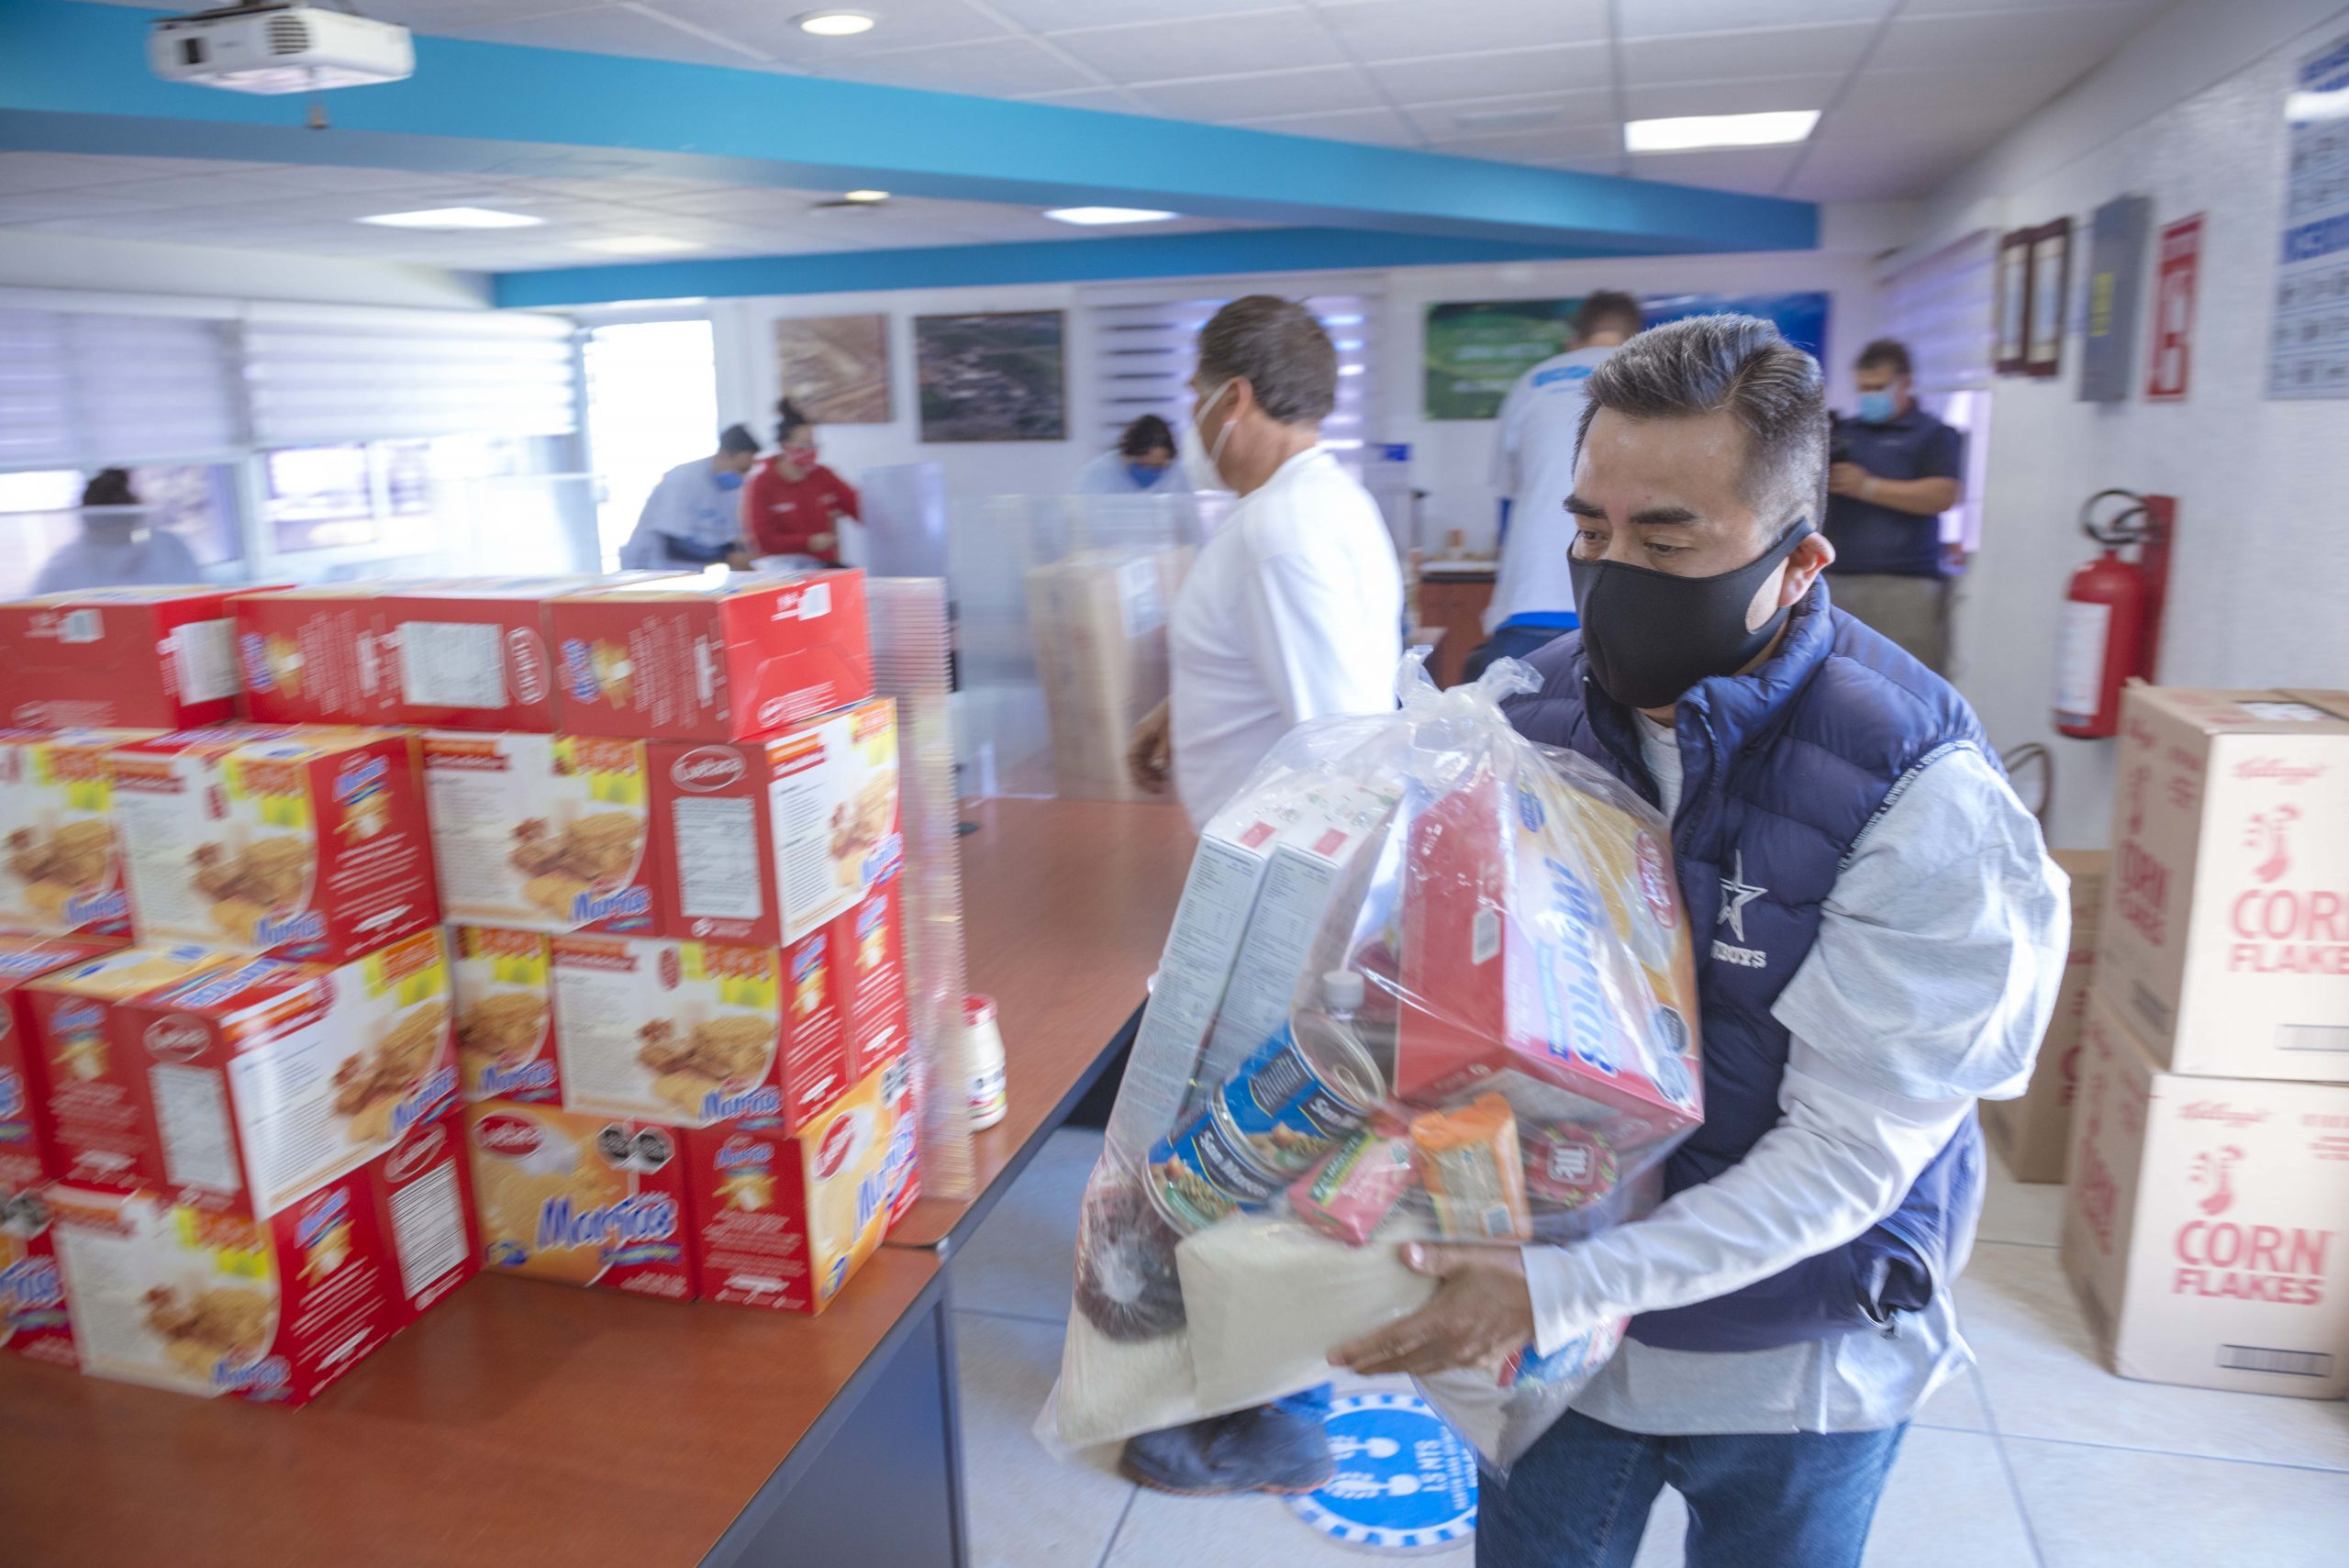 Continúa Ecolab apoyando a la comunidad del Estado de México con alimentos para más de 90 familias